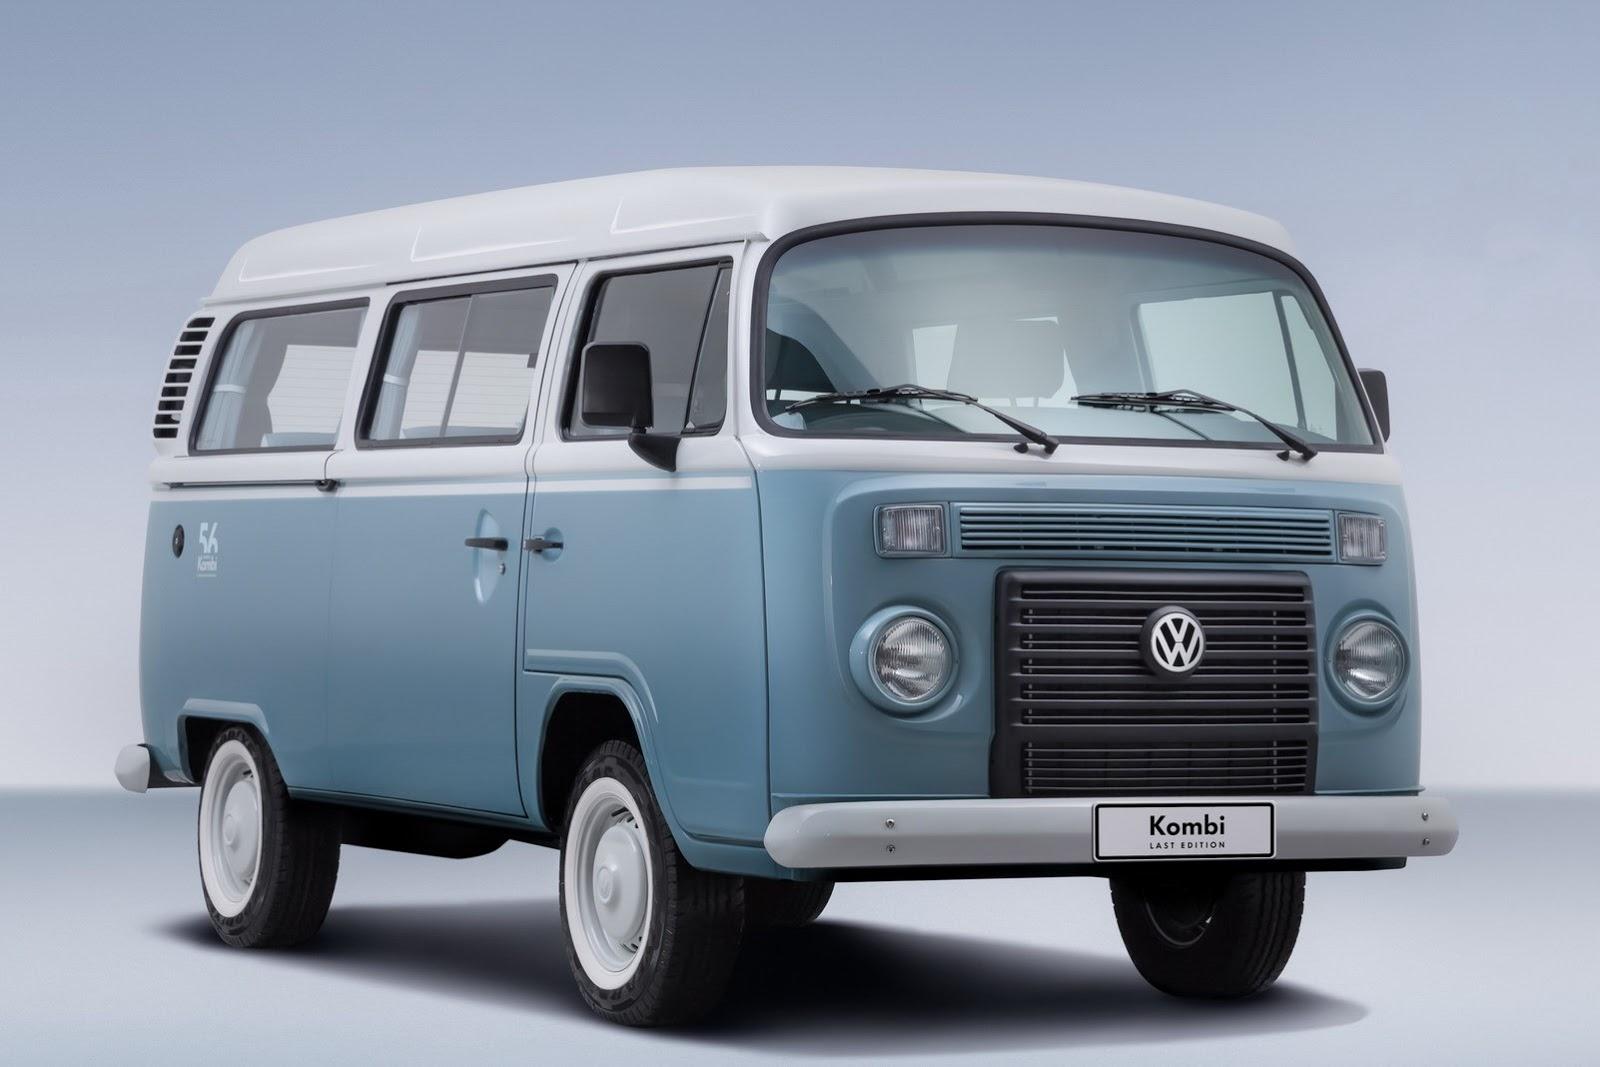 Volkswagen Kombi - Last Edition – image 4